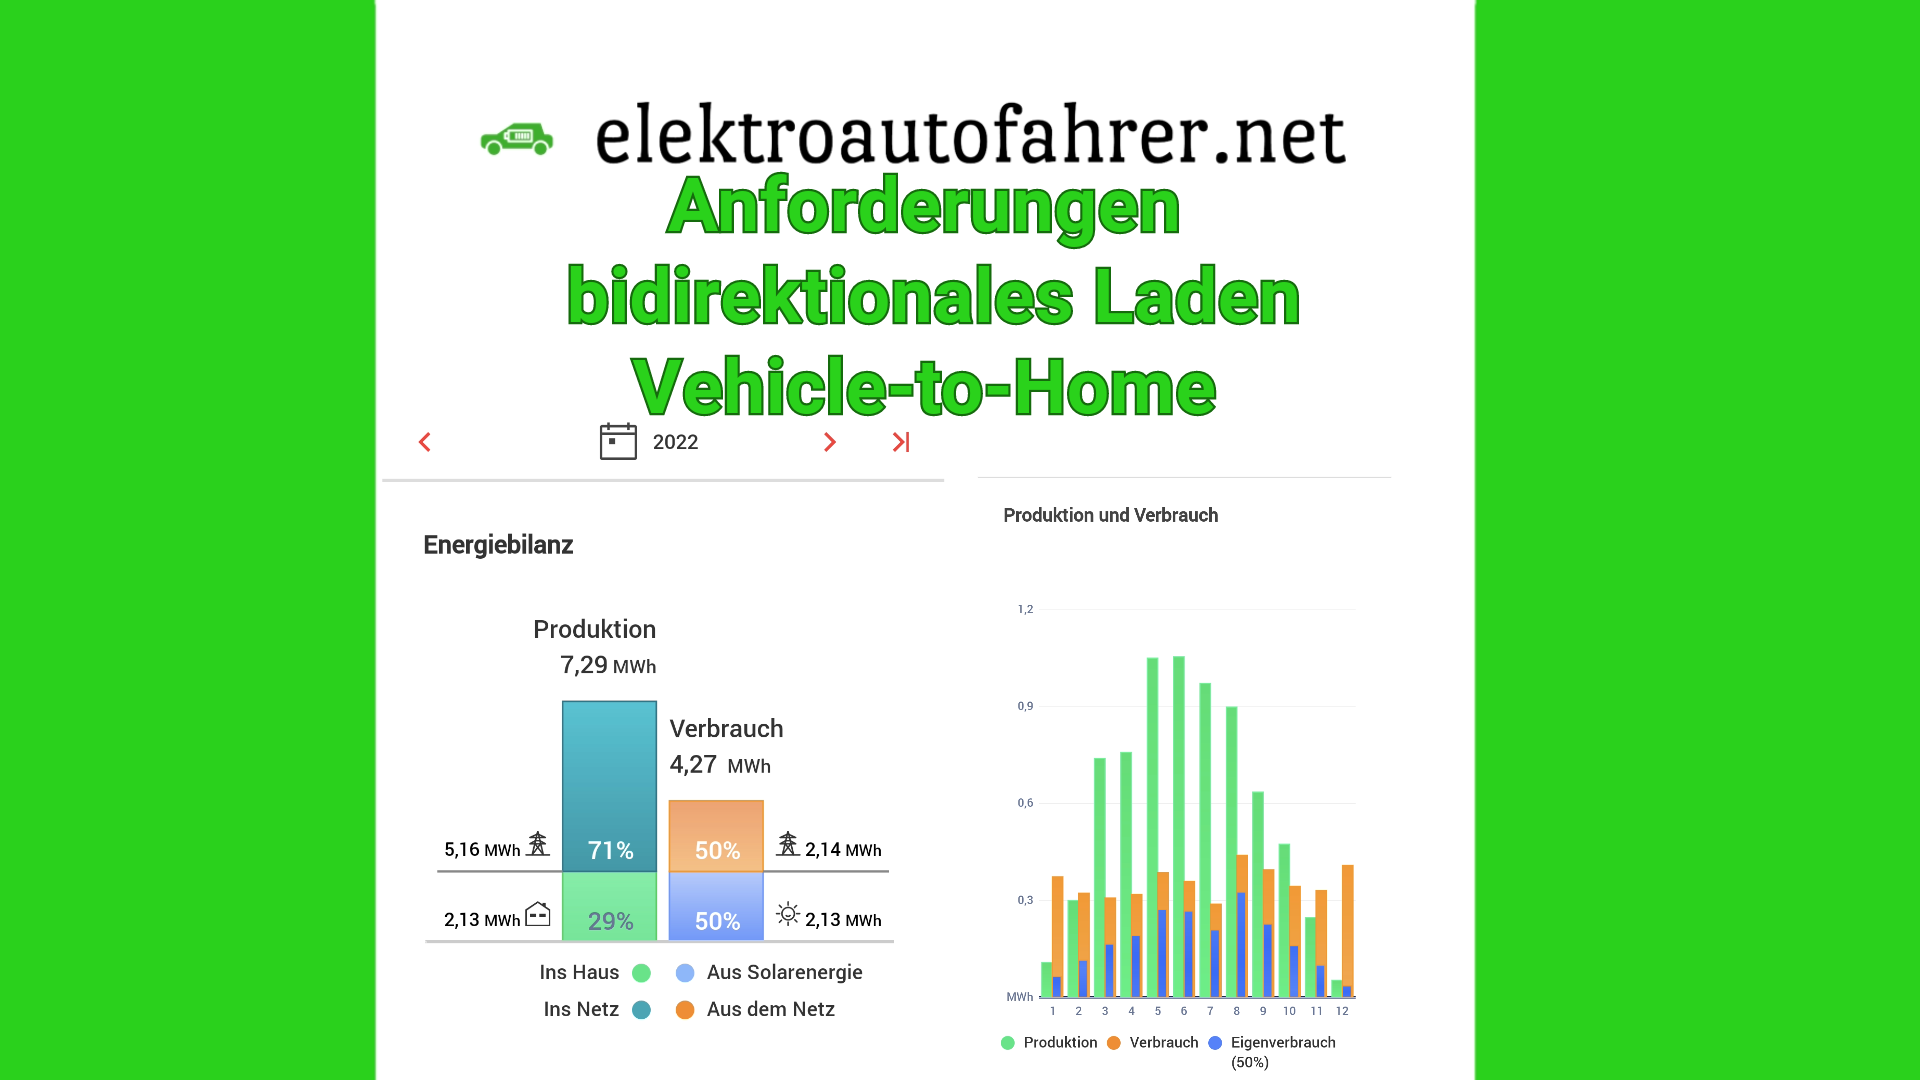 Vorteile wie Smart-Charging und Nutzung der Flexibilität des Elektroautos als Stromspeicher für bidirektionales Laden und Vehicle-to-Home (V2H)